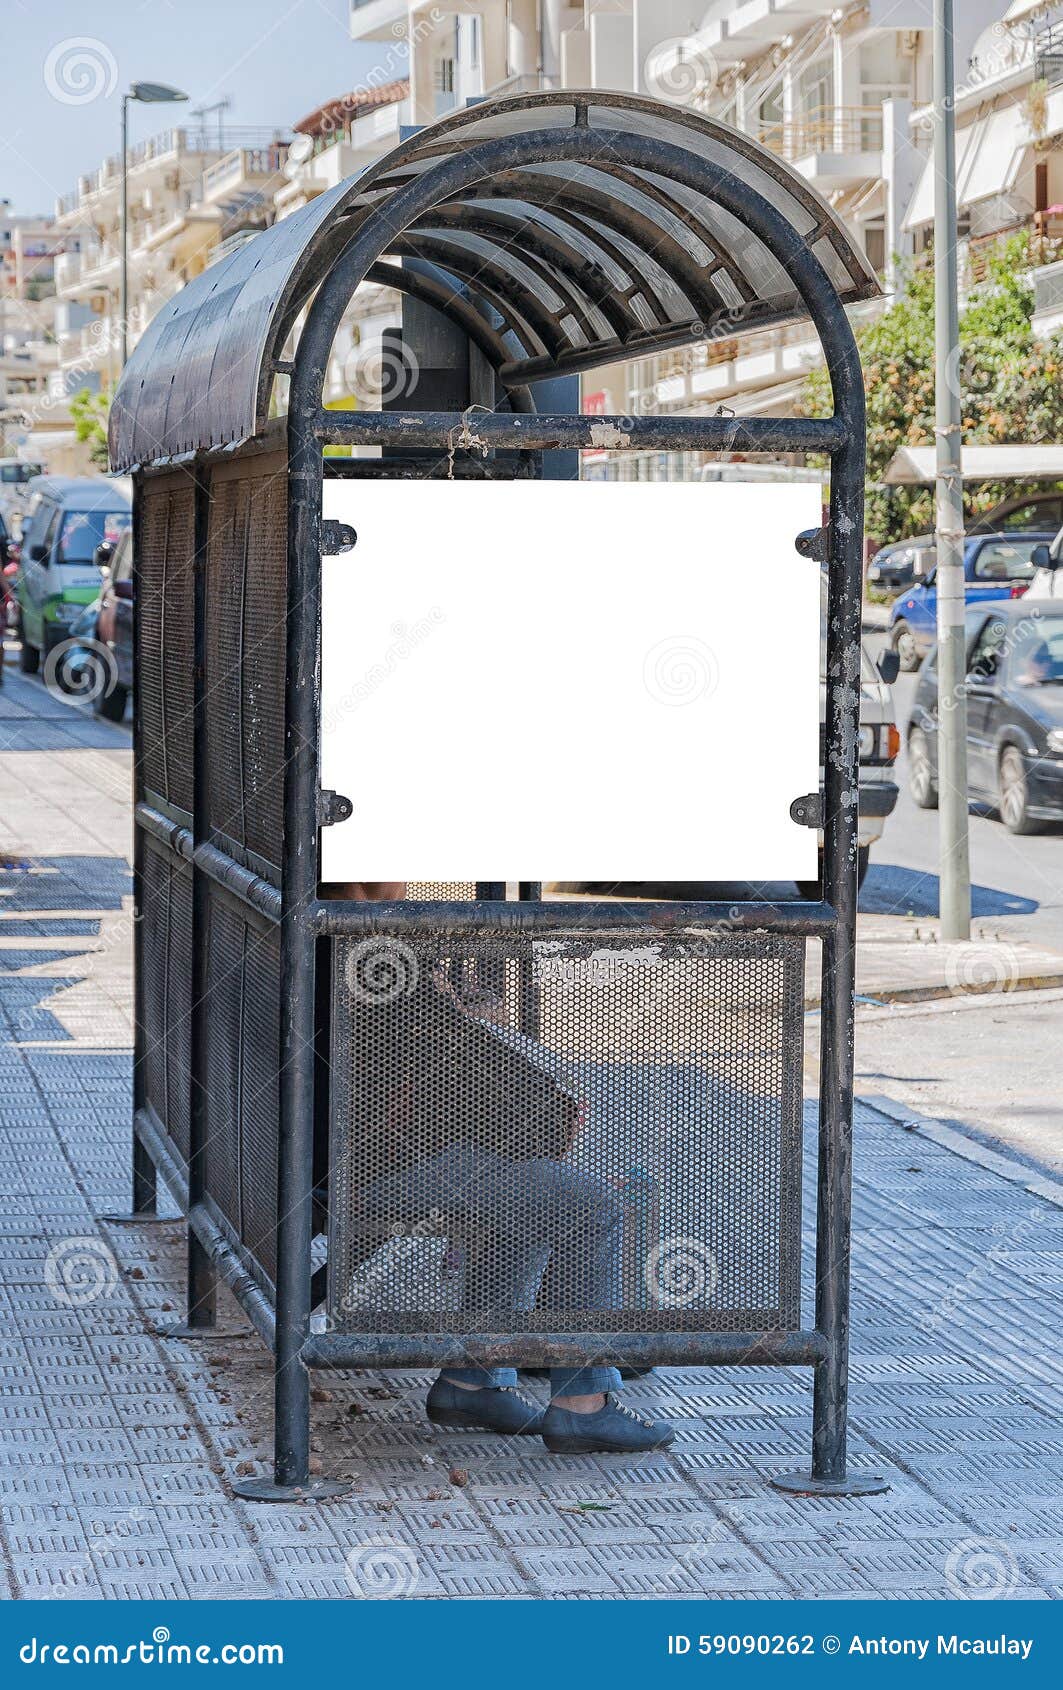 Bus Stop Crete stock photo. Image of bench, media ...